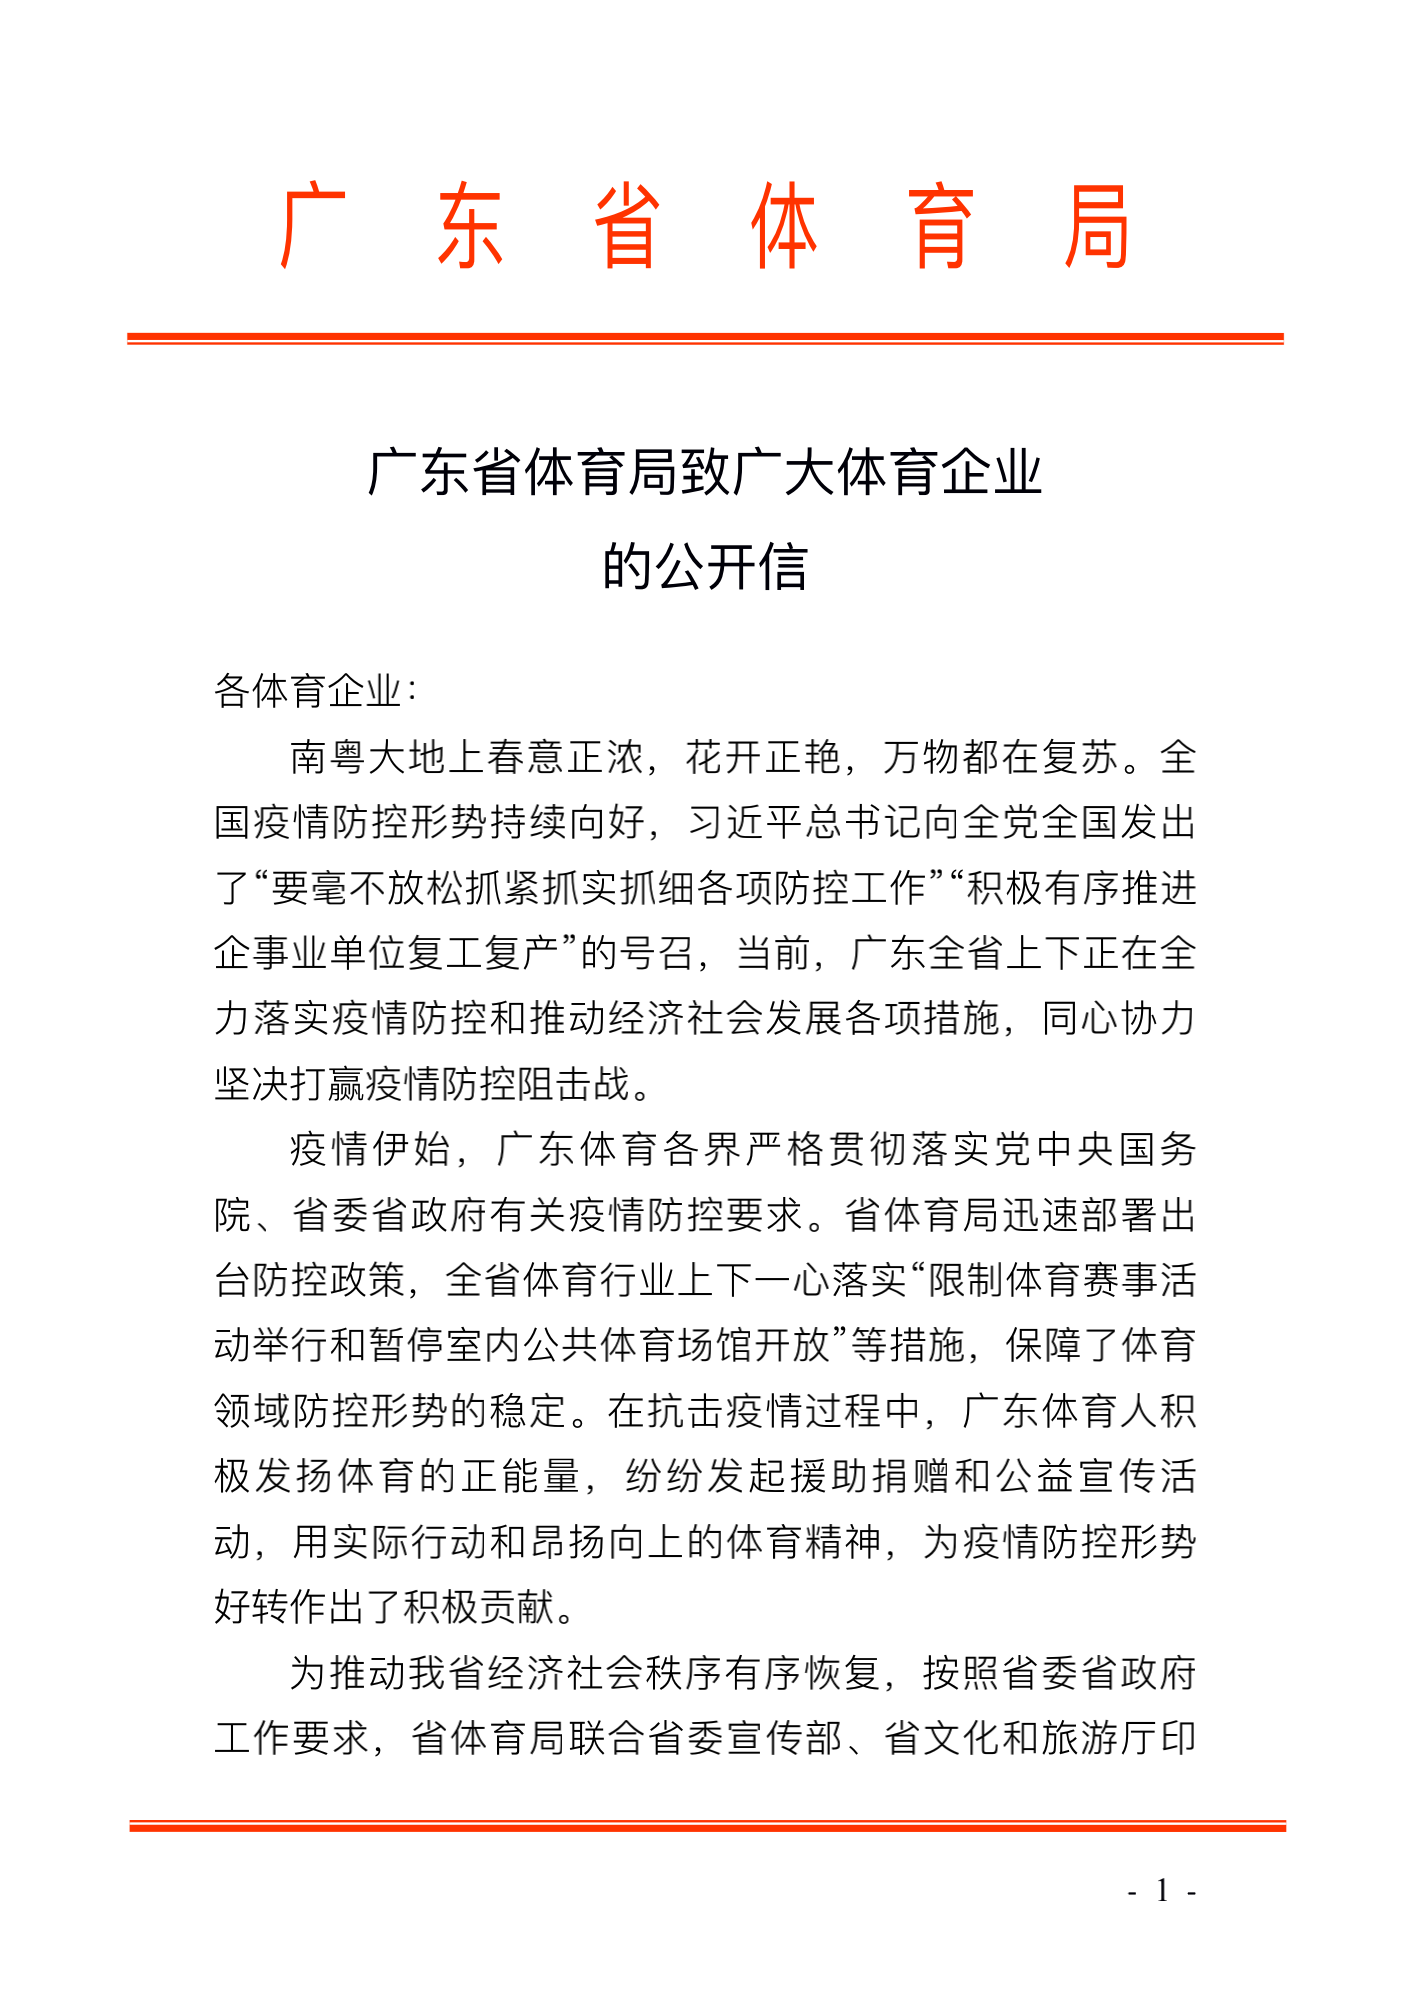 广东省体育局致广大体育企业的公开信_00.png